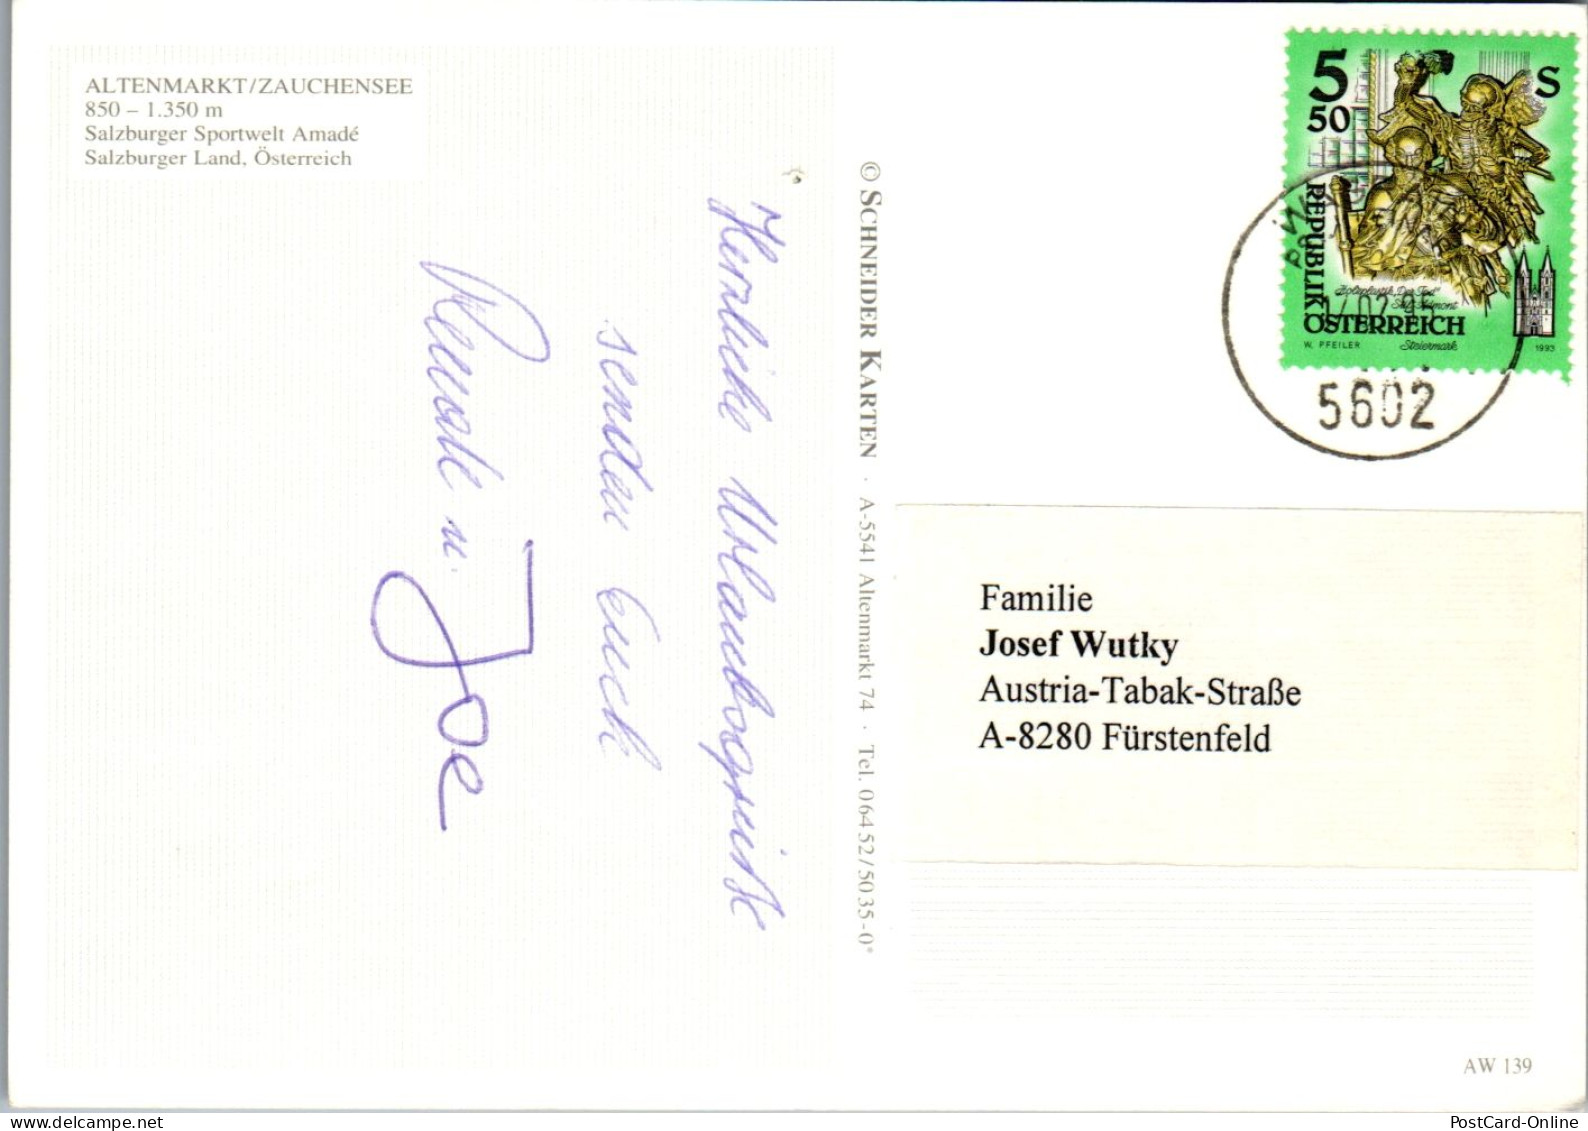 46901 - Salzburg - Altenmarkt , Zauchensee , Mehrbildkarte - Gelaufen 1995 - Altenmarkt Im Pongau